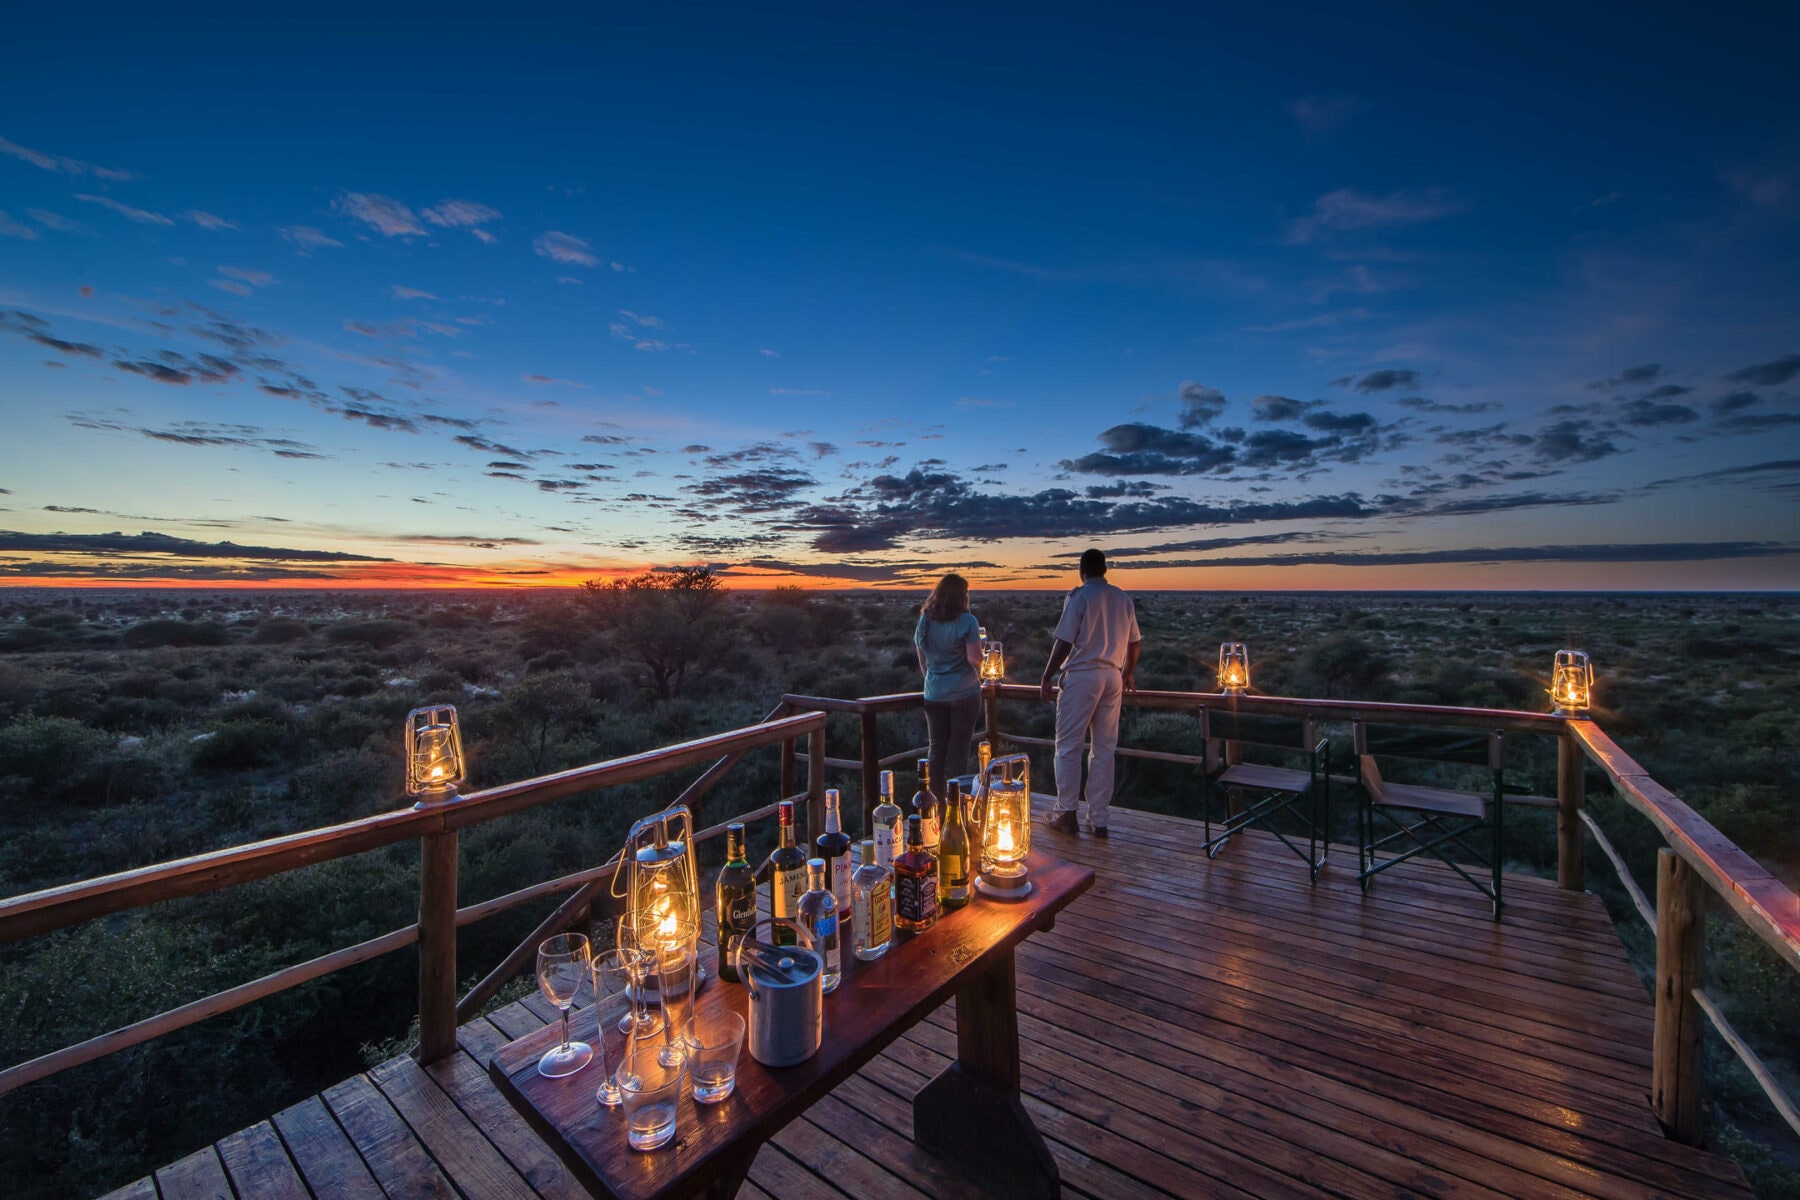 Lookout deck at sunset - Dinaka - Botswana